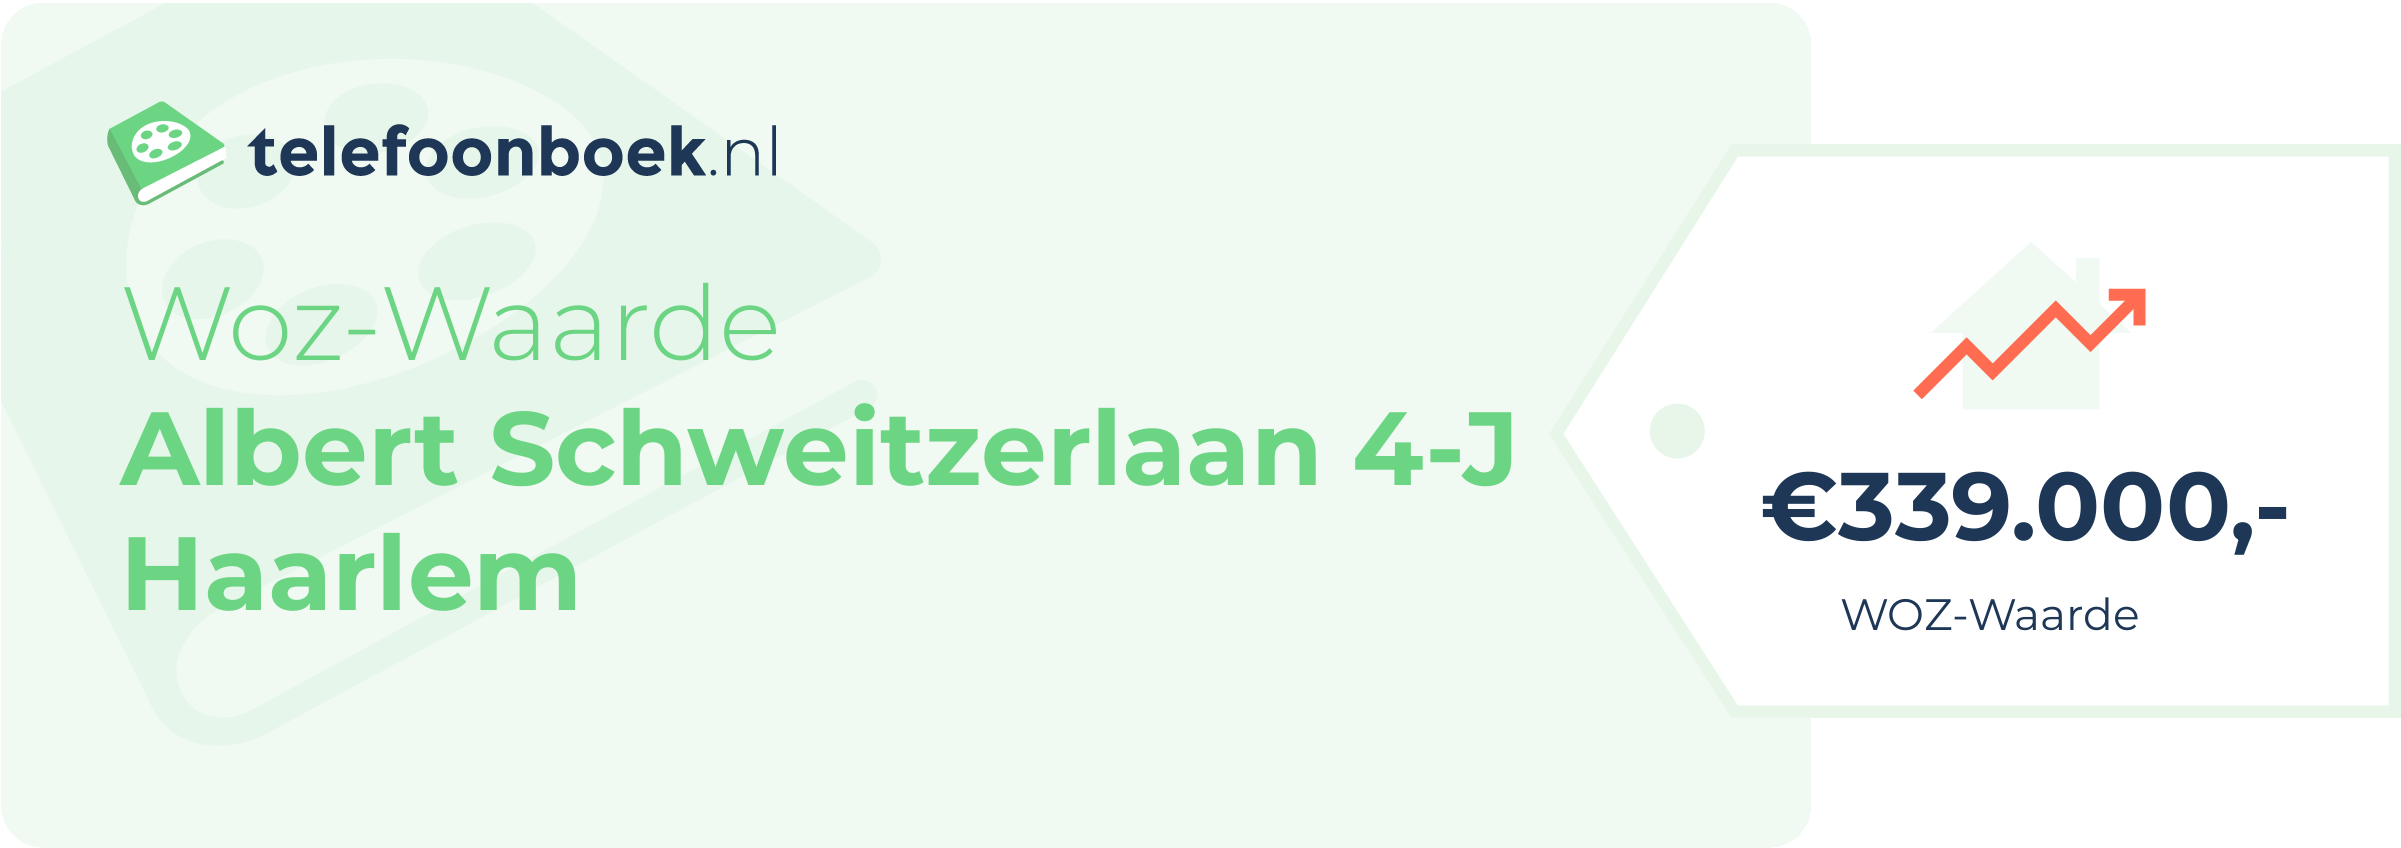 WOZ-waarde Albert Schweitzerlaan 4-J Haarlem